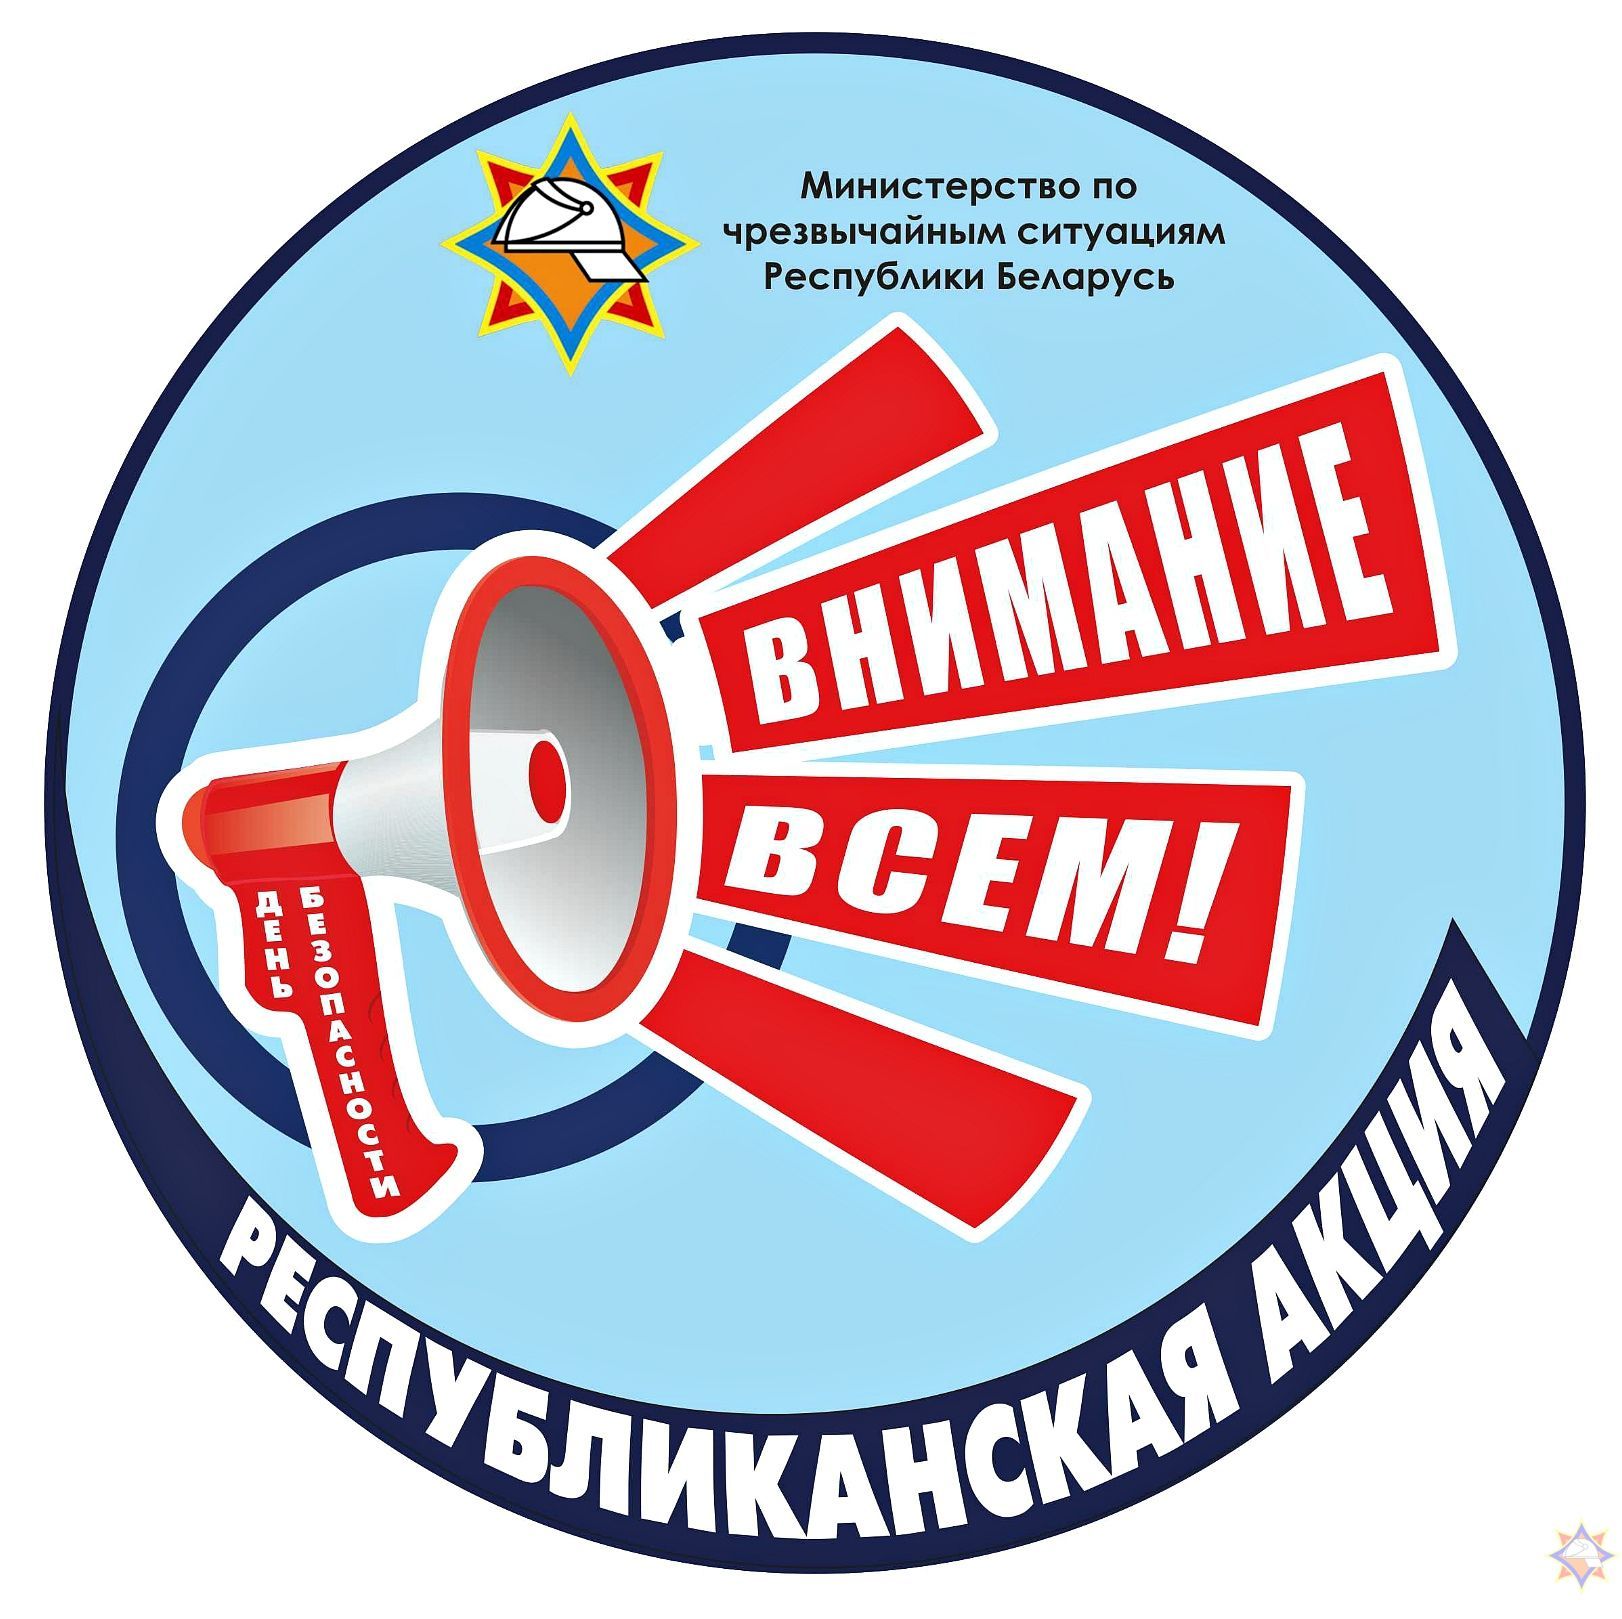 Республиканская кампания (акция) «День безопасности. Внимание всем!» стартует в Гродно